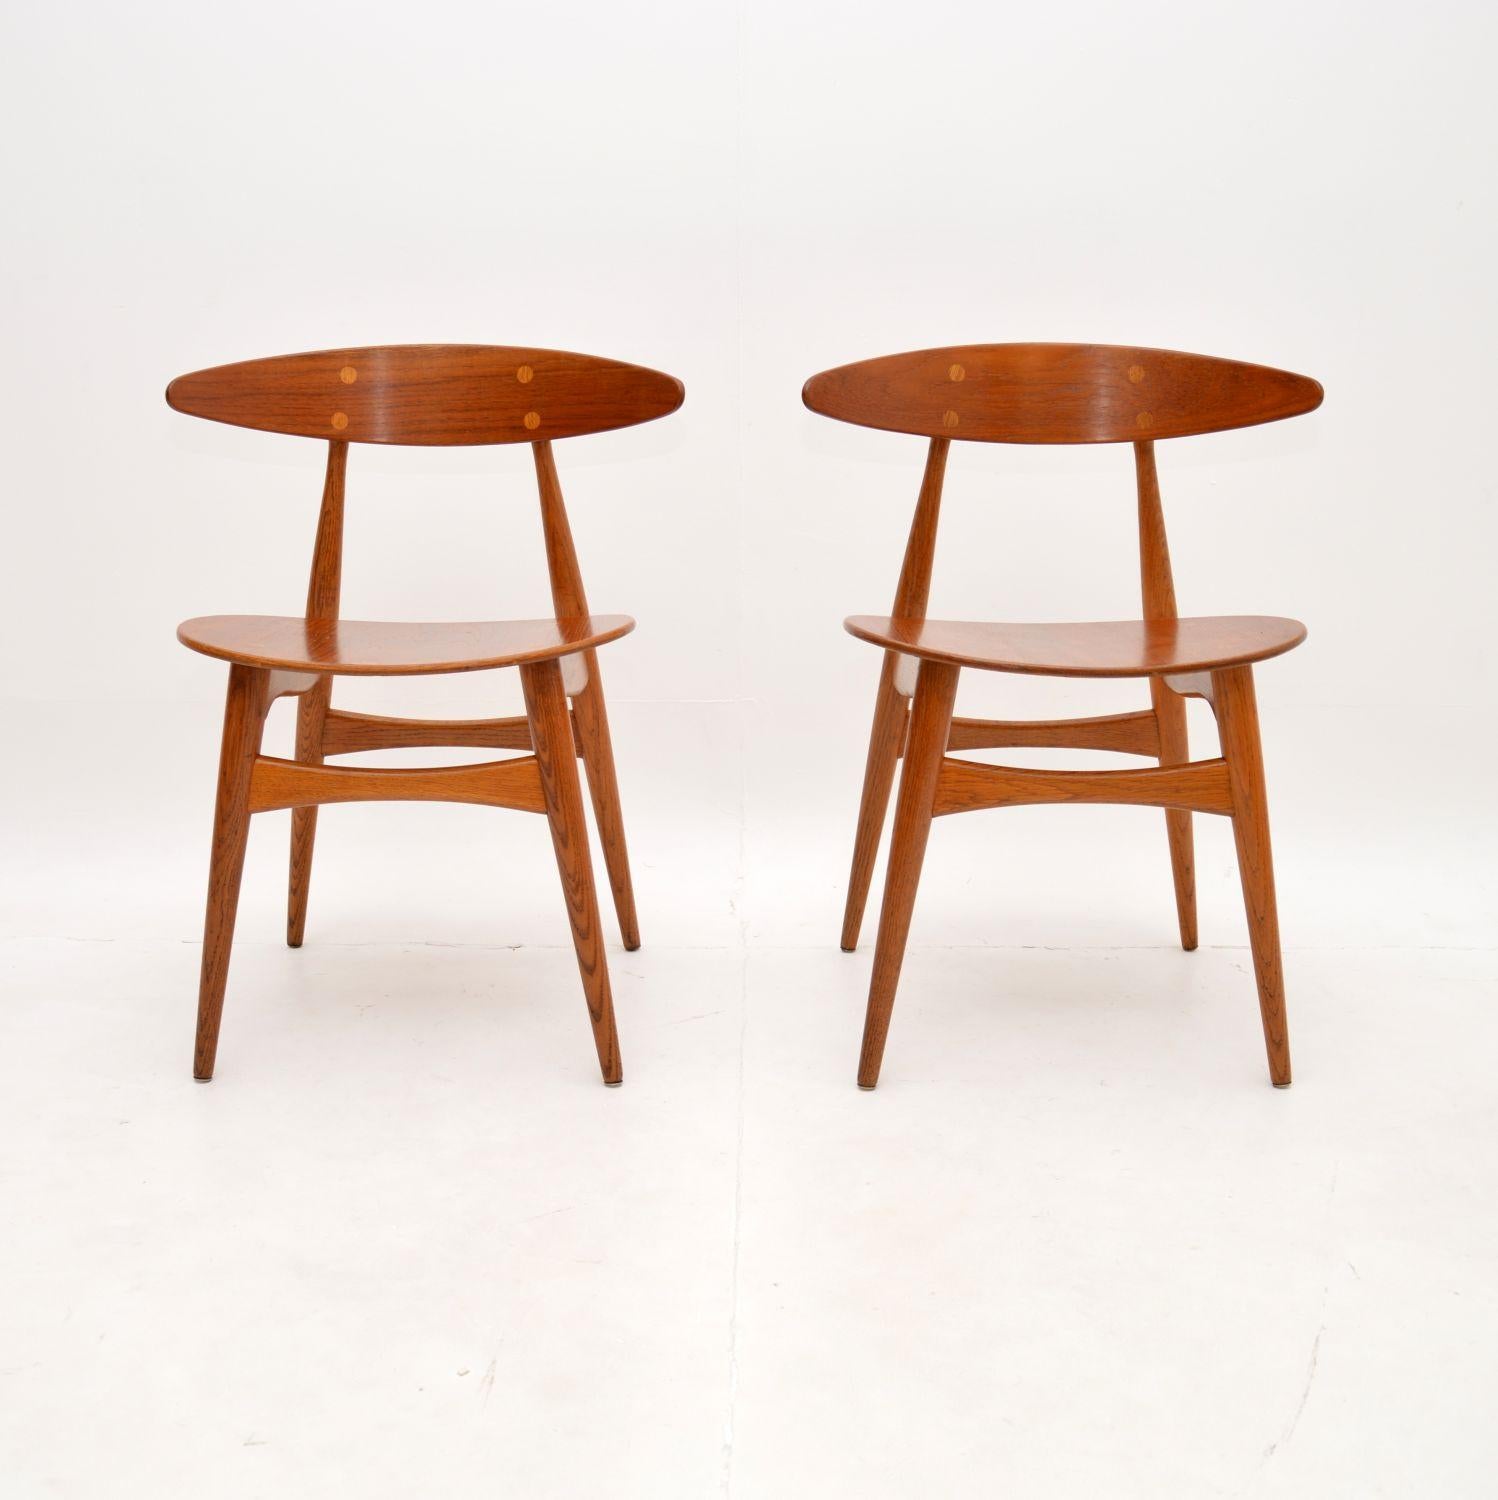 Ein atemberaubendes und ikonisches Paar dänischer CH33-Stühle von Hans Wegner für Carl Hansen & Son. Sie sind originale Vintage-Modelle und stammen aus den 1960er Jahren.

Die Qualität ist hervorragend, die Rahmen sind aus massivem Eichenholz